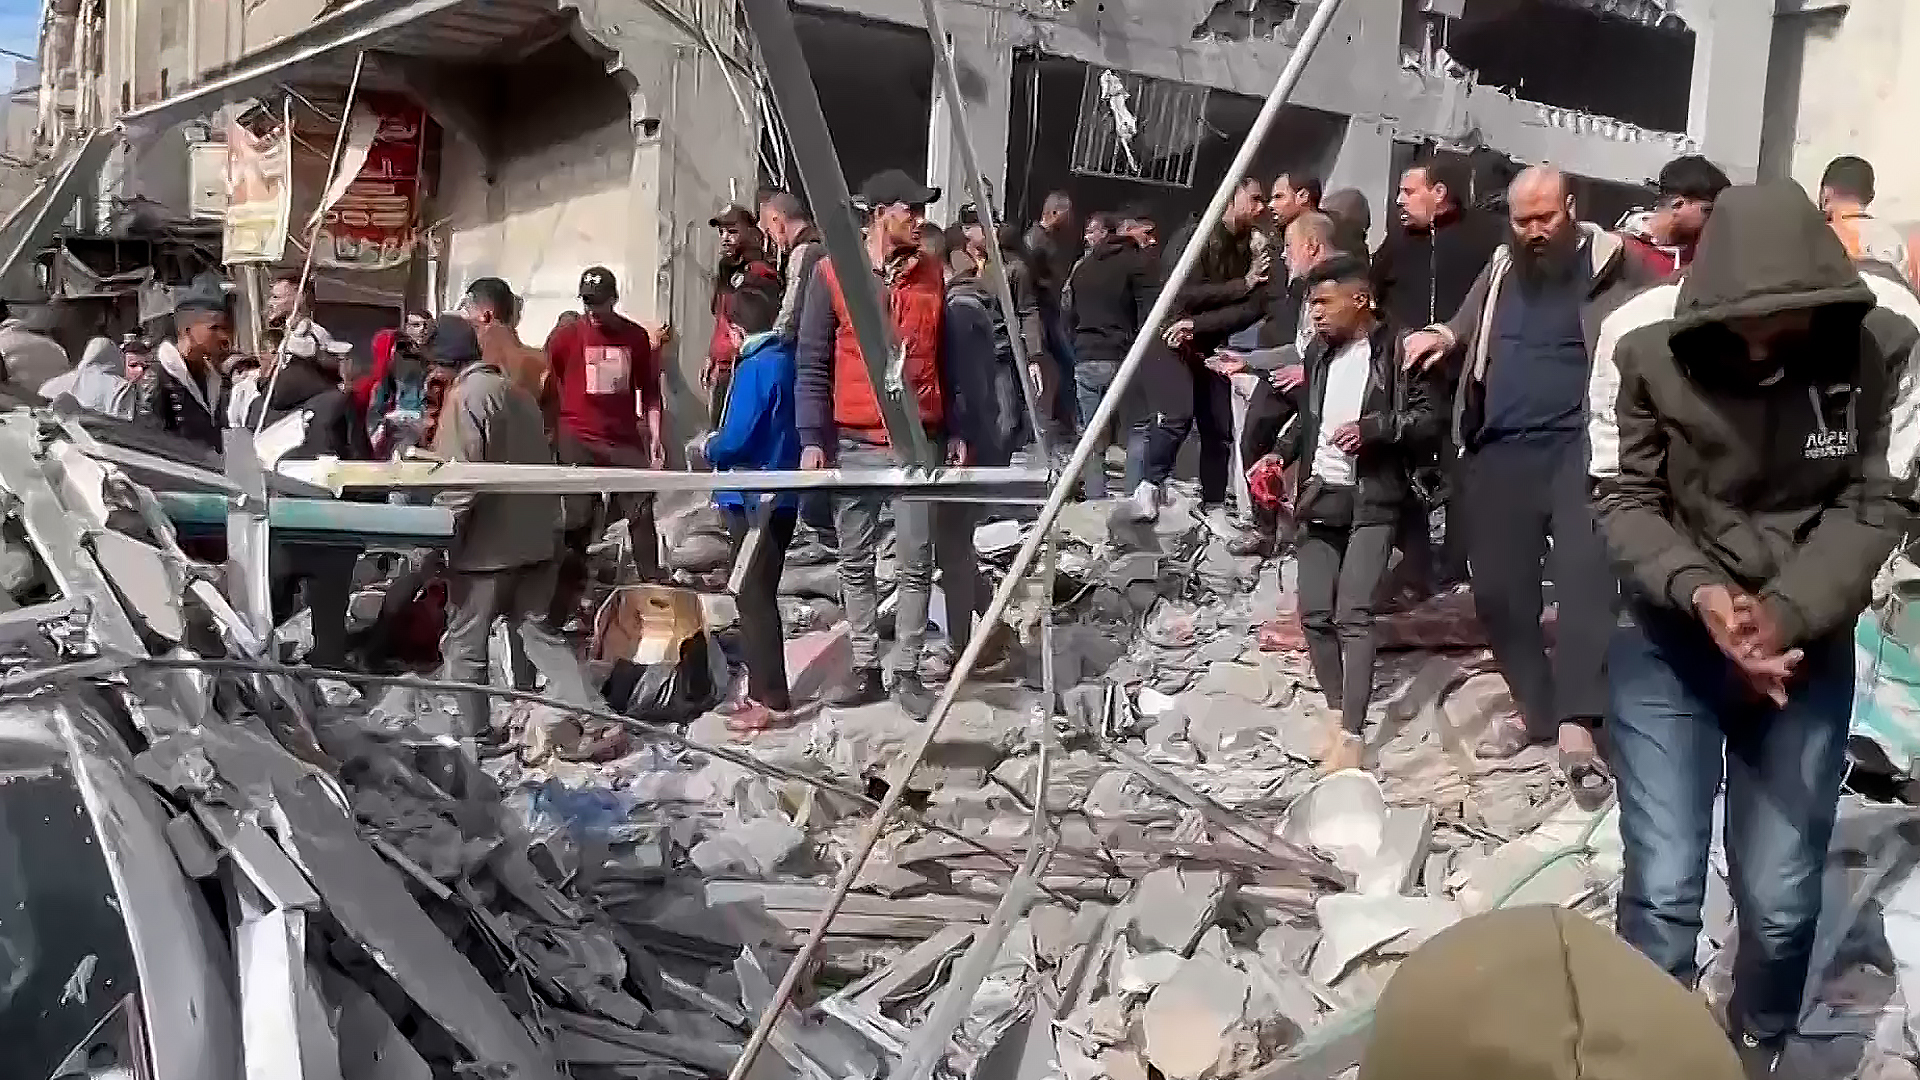 كاميرا البوكس نيوز ترصد الدمار الذي لحق بمنازل بخان يونس جراء قصف إسرائيلي | التقارير الإخبارية – البوكس نيوز